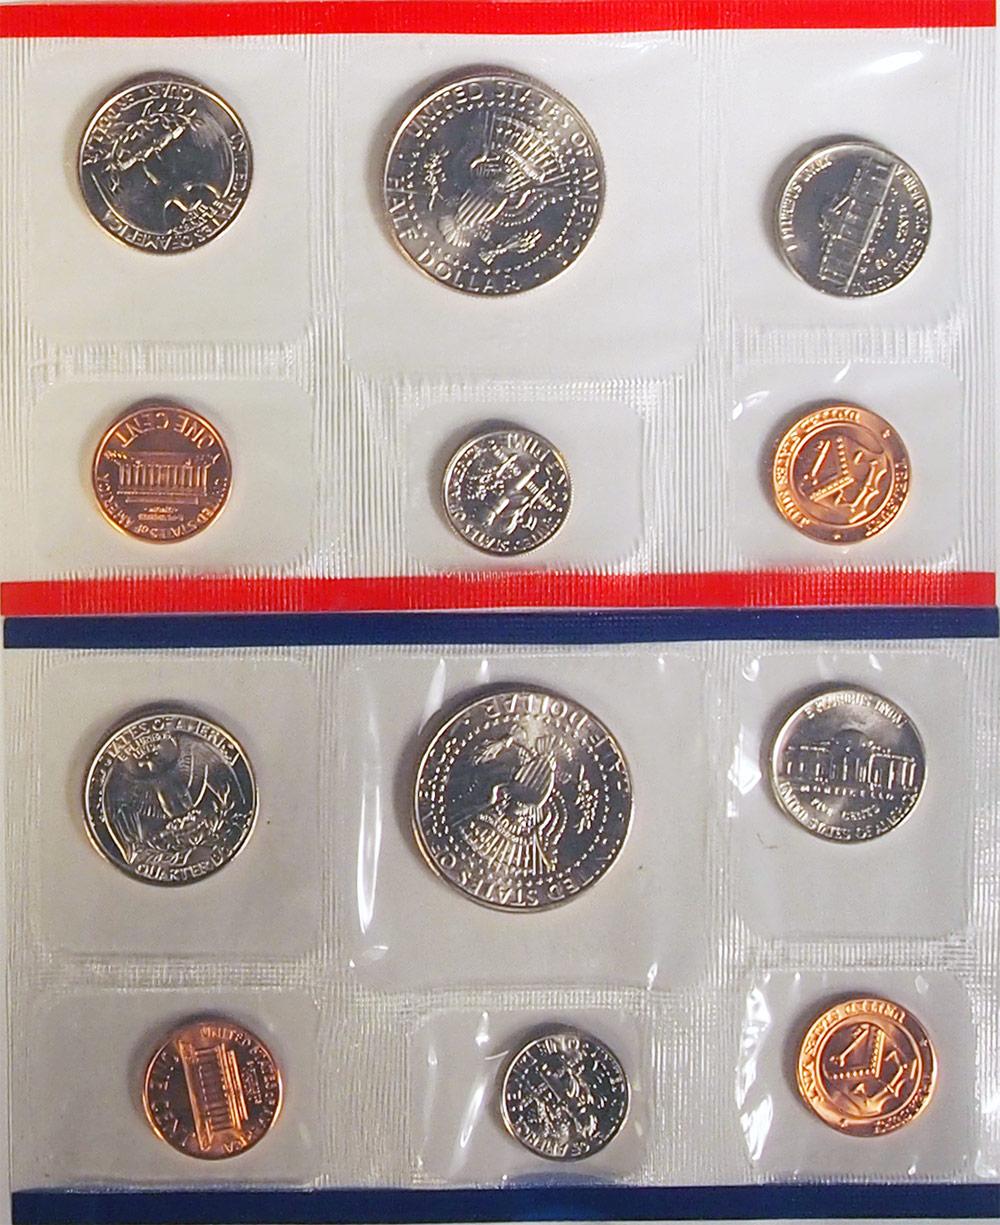 1995 Mint Set - All Original 10 Coin U.S. Mint Uncirculated Set